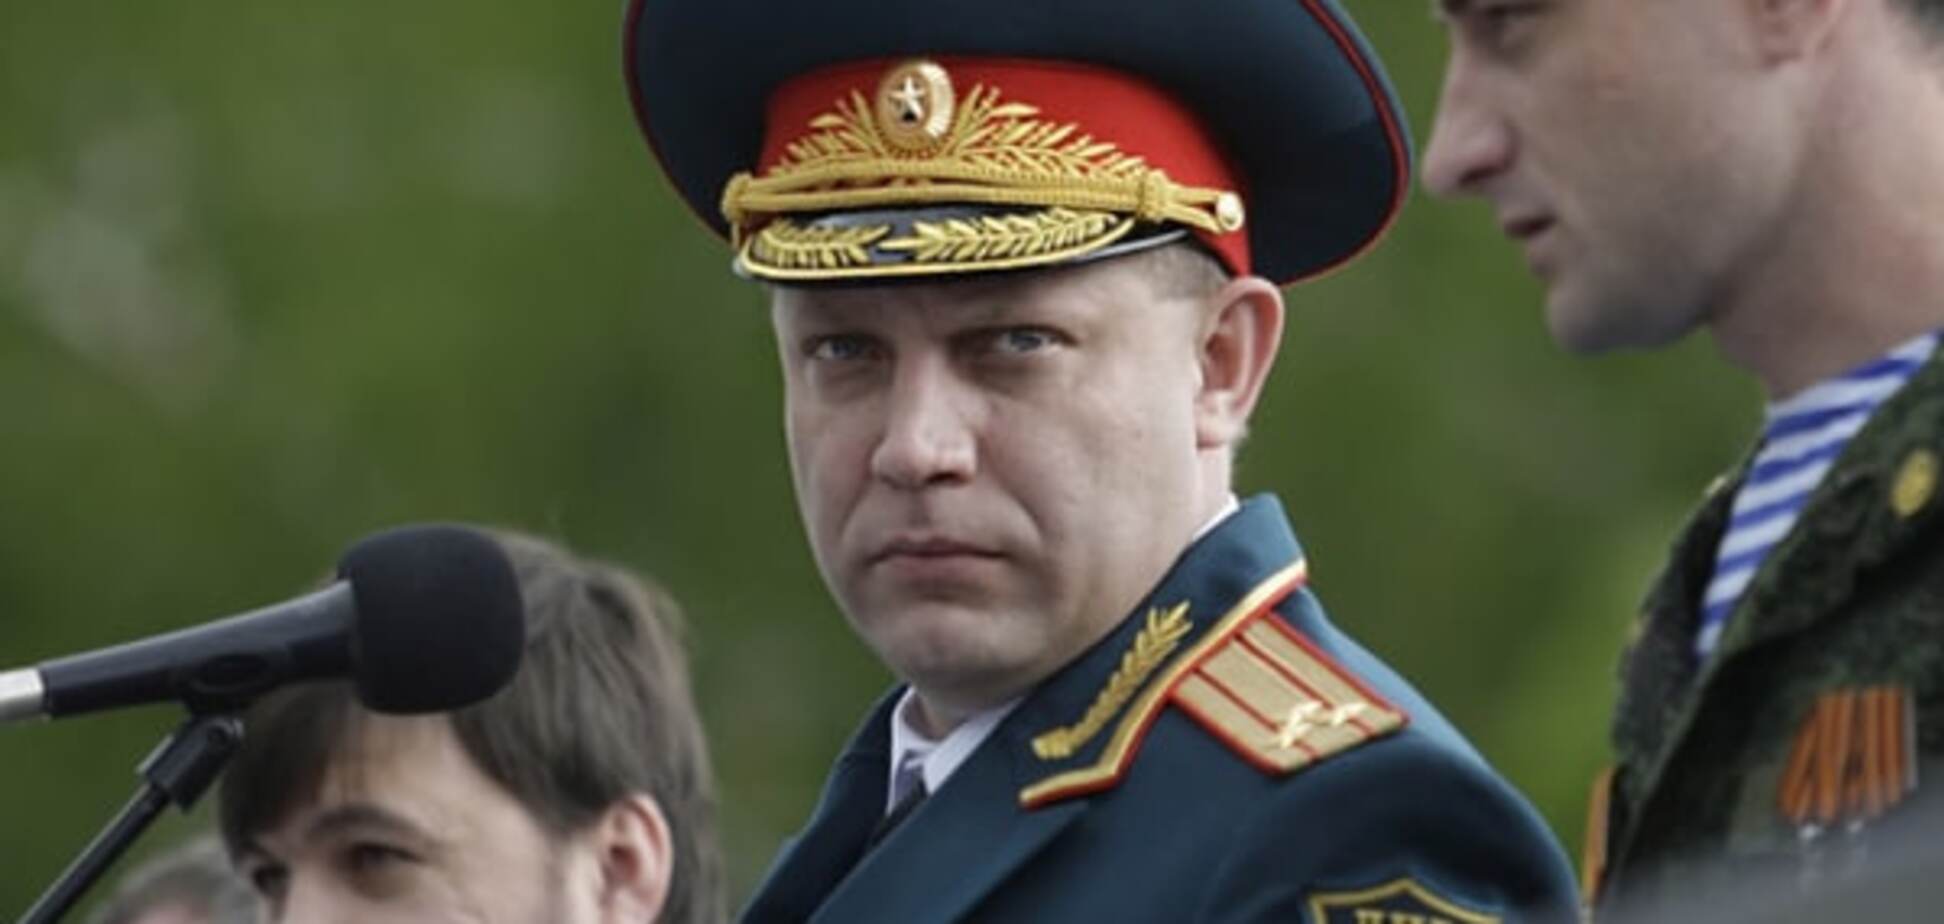 Конец перемирию: Захарченко отдал приказ террористам на применение любых видов оружия